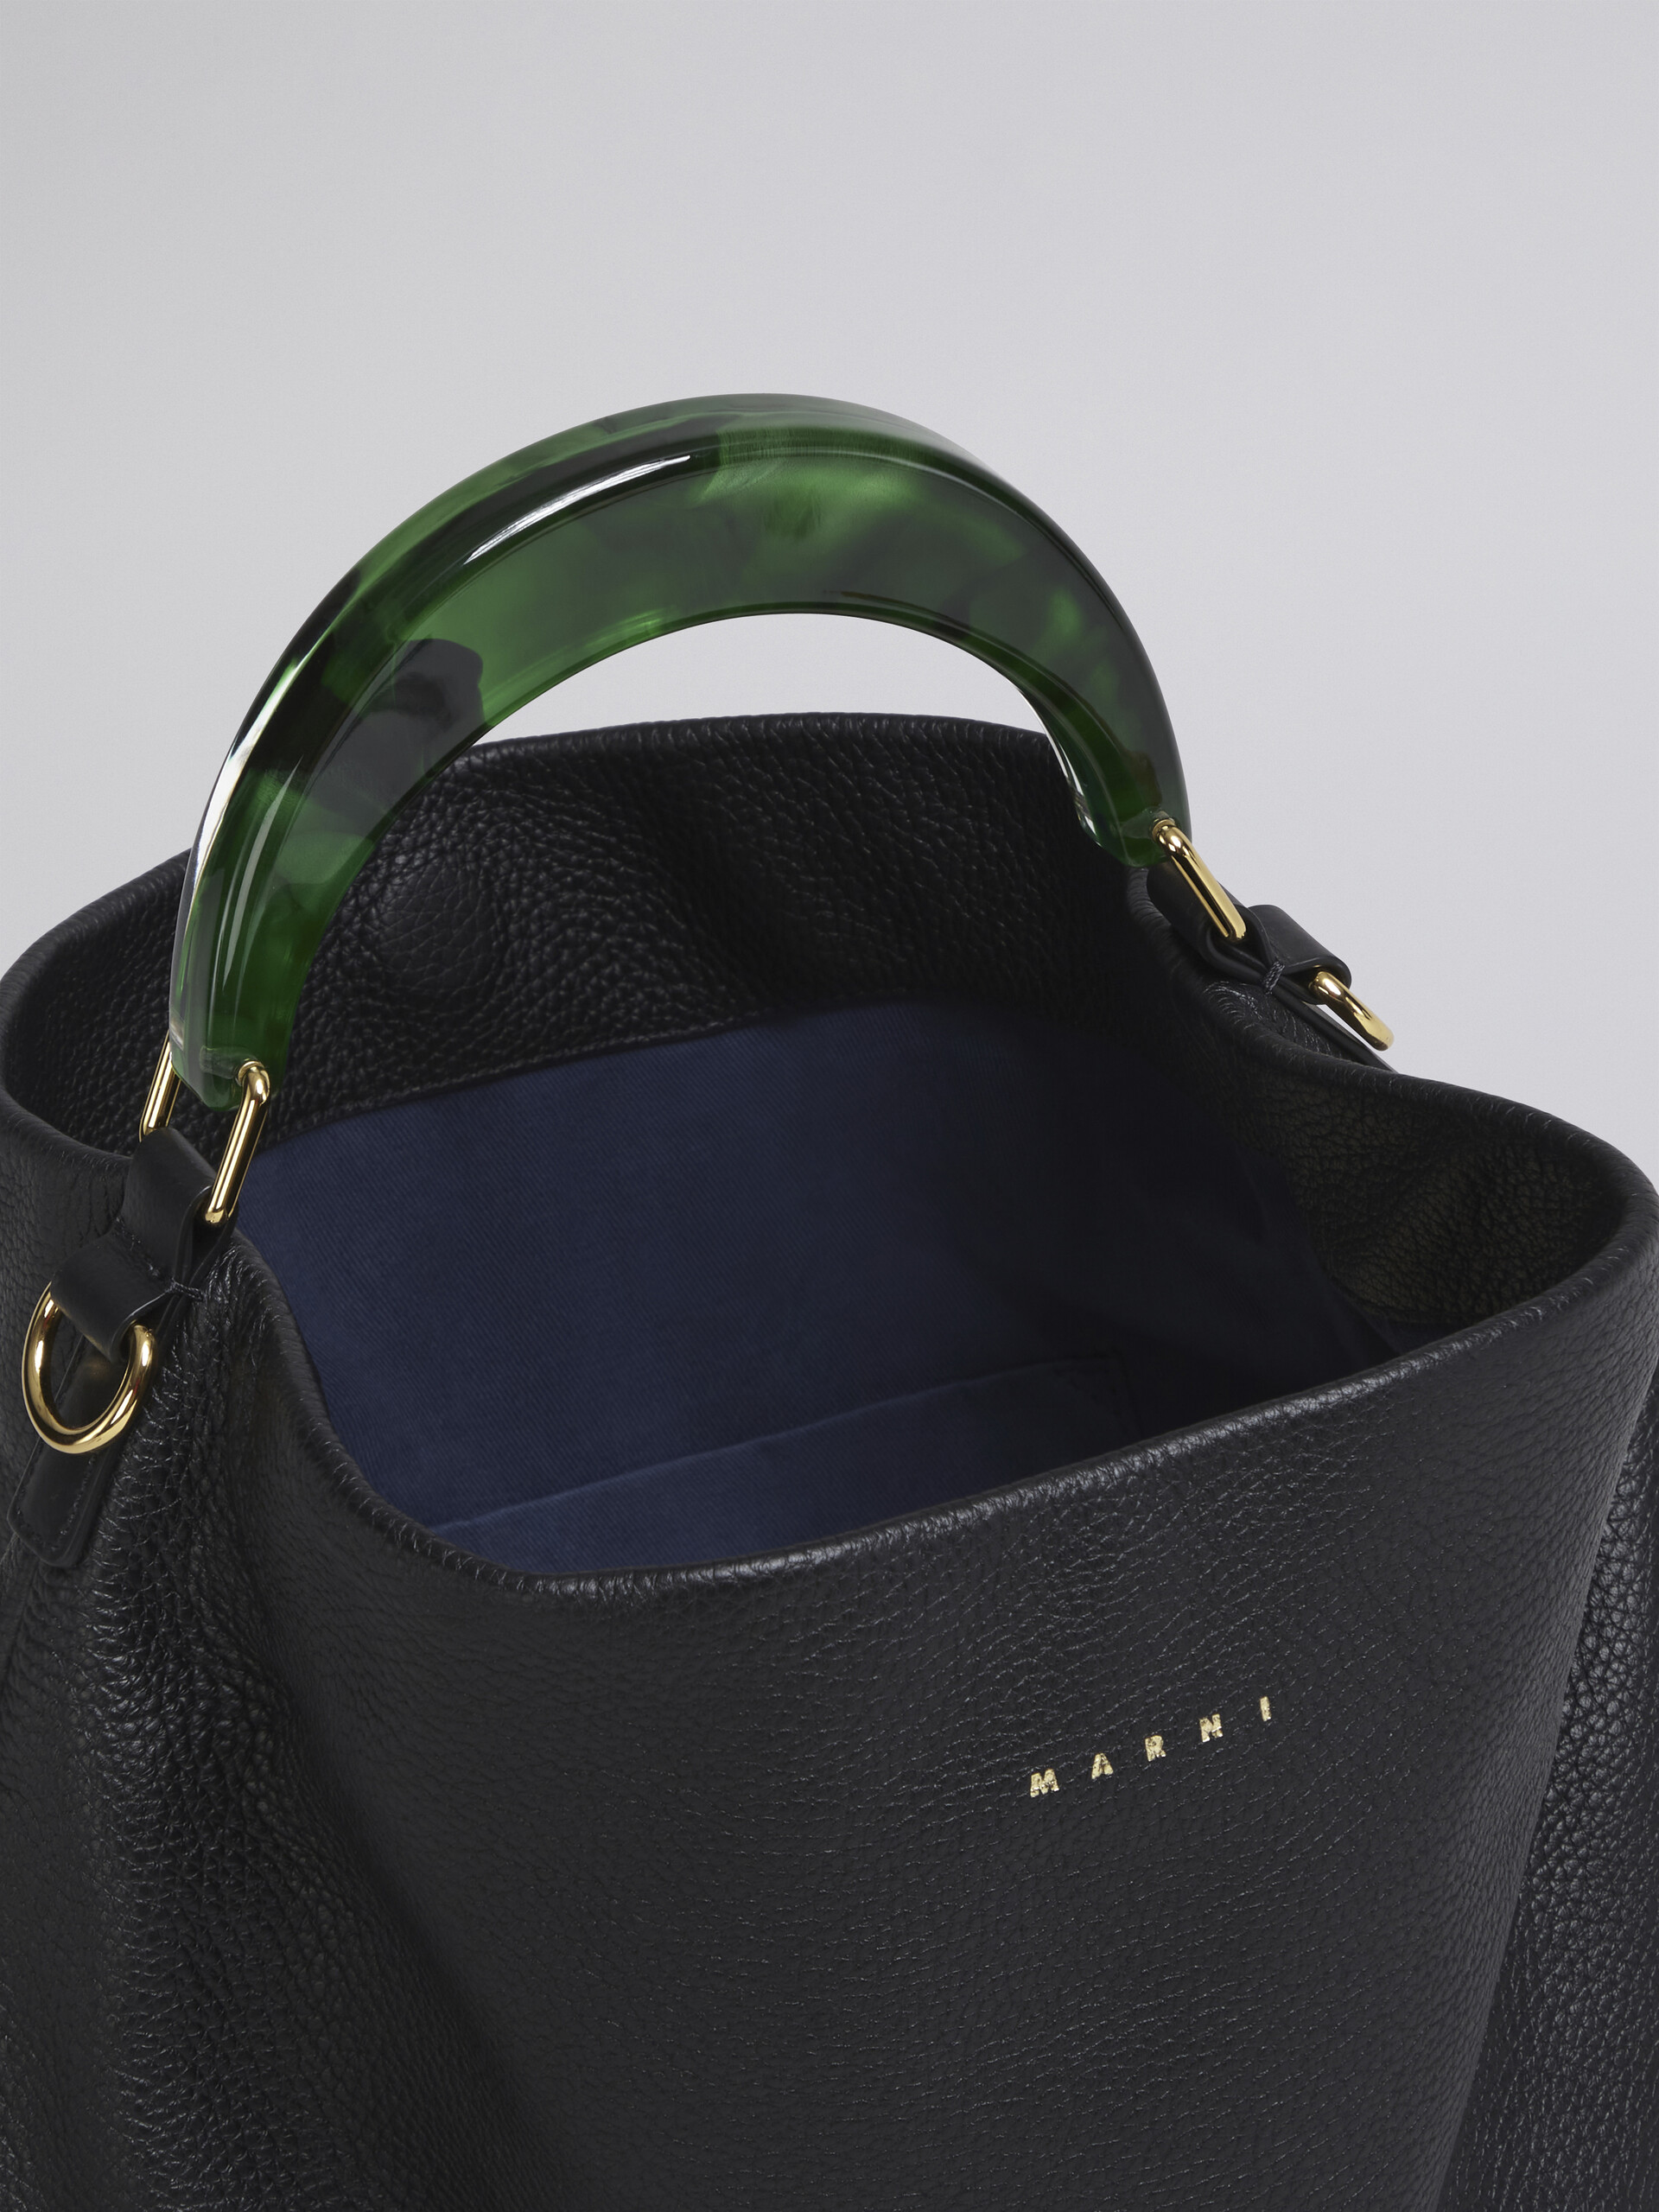 HOBO bag in black grained calfskin and resin handle - Shoulder Bag - Image 4